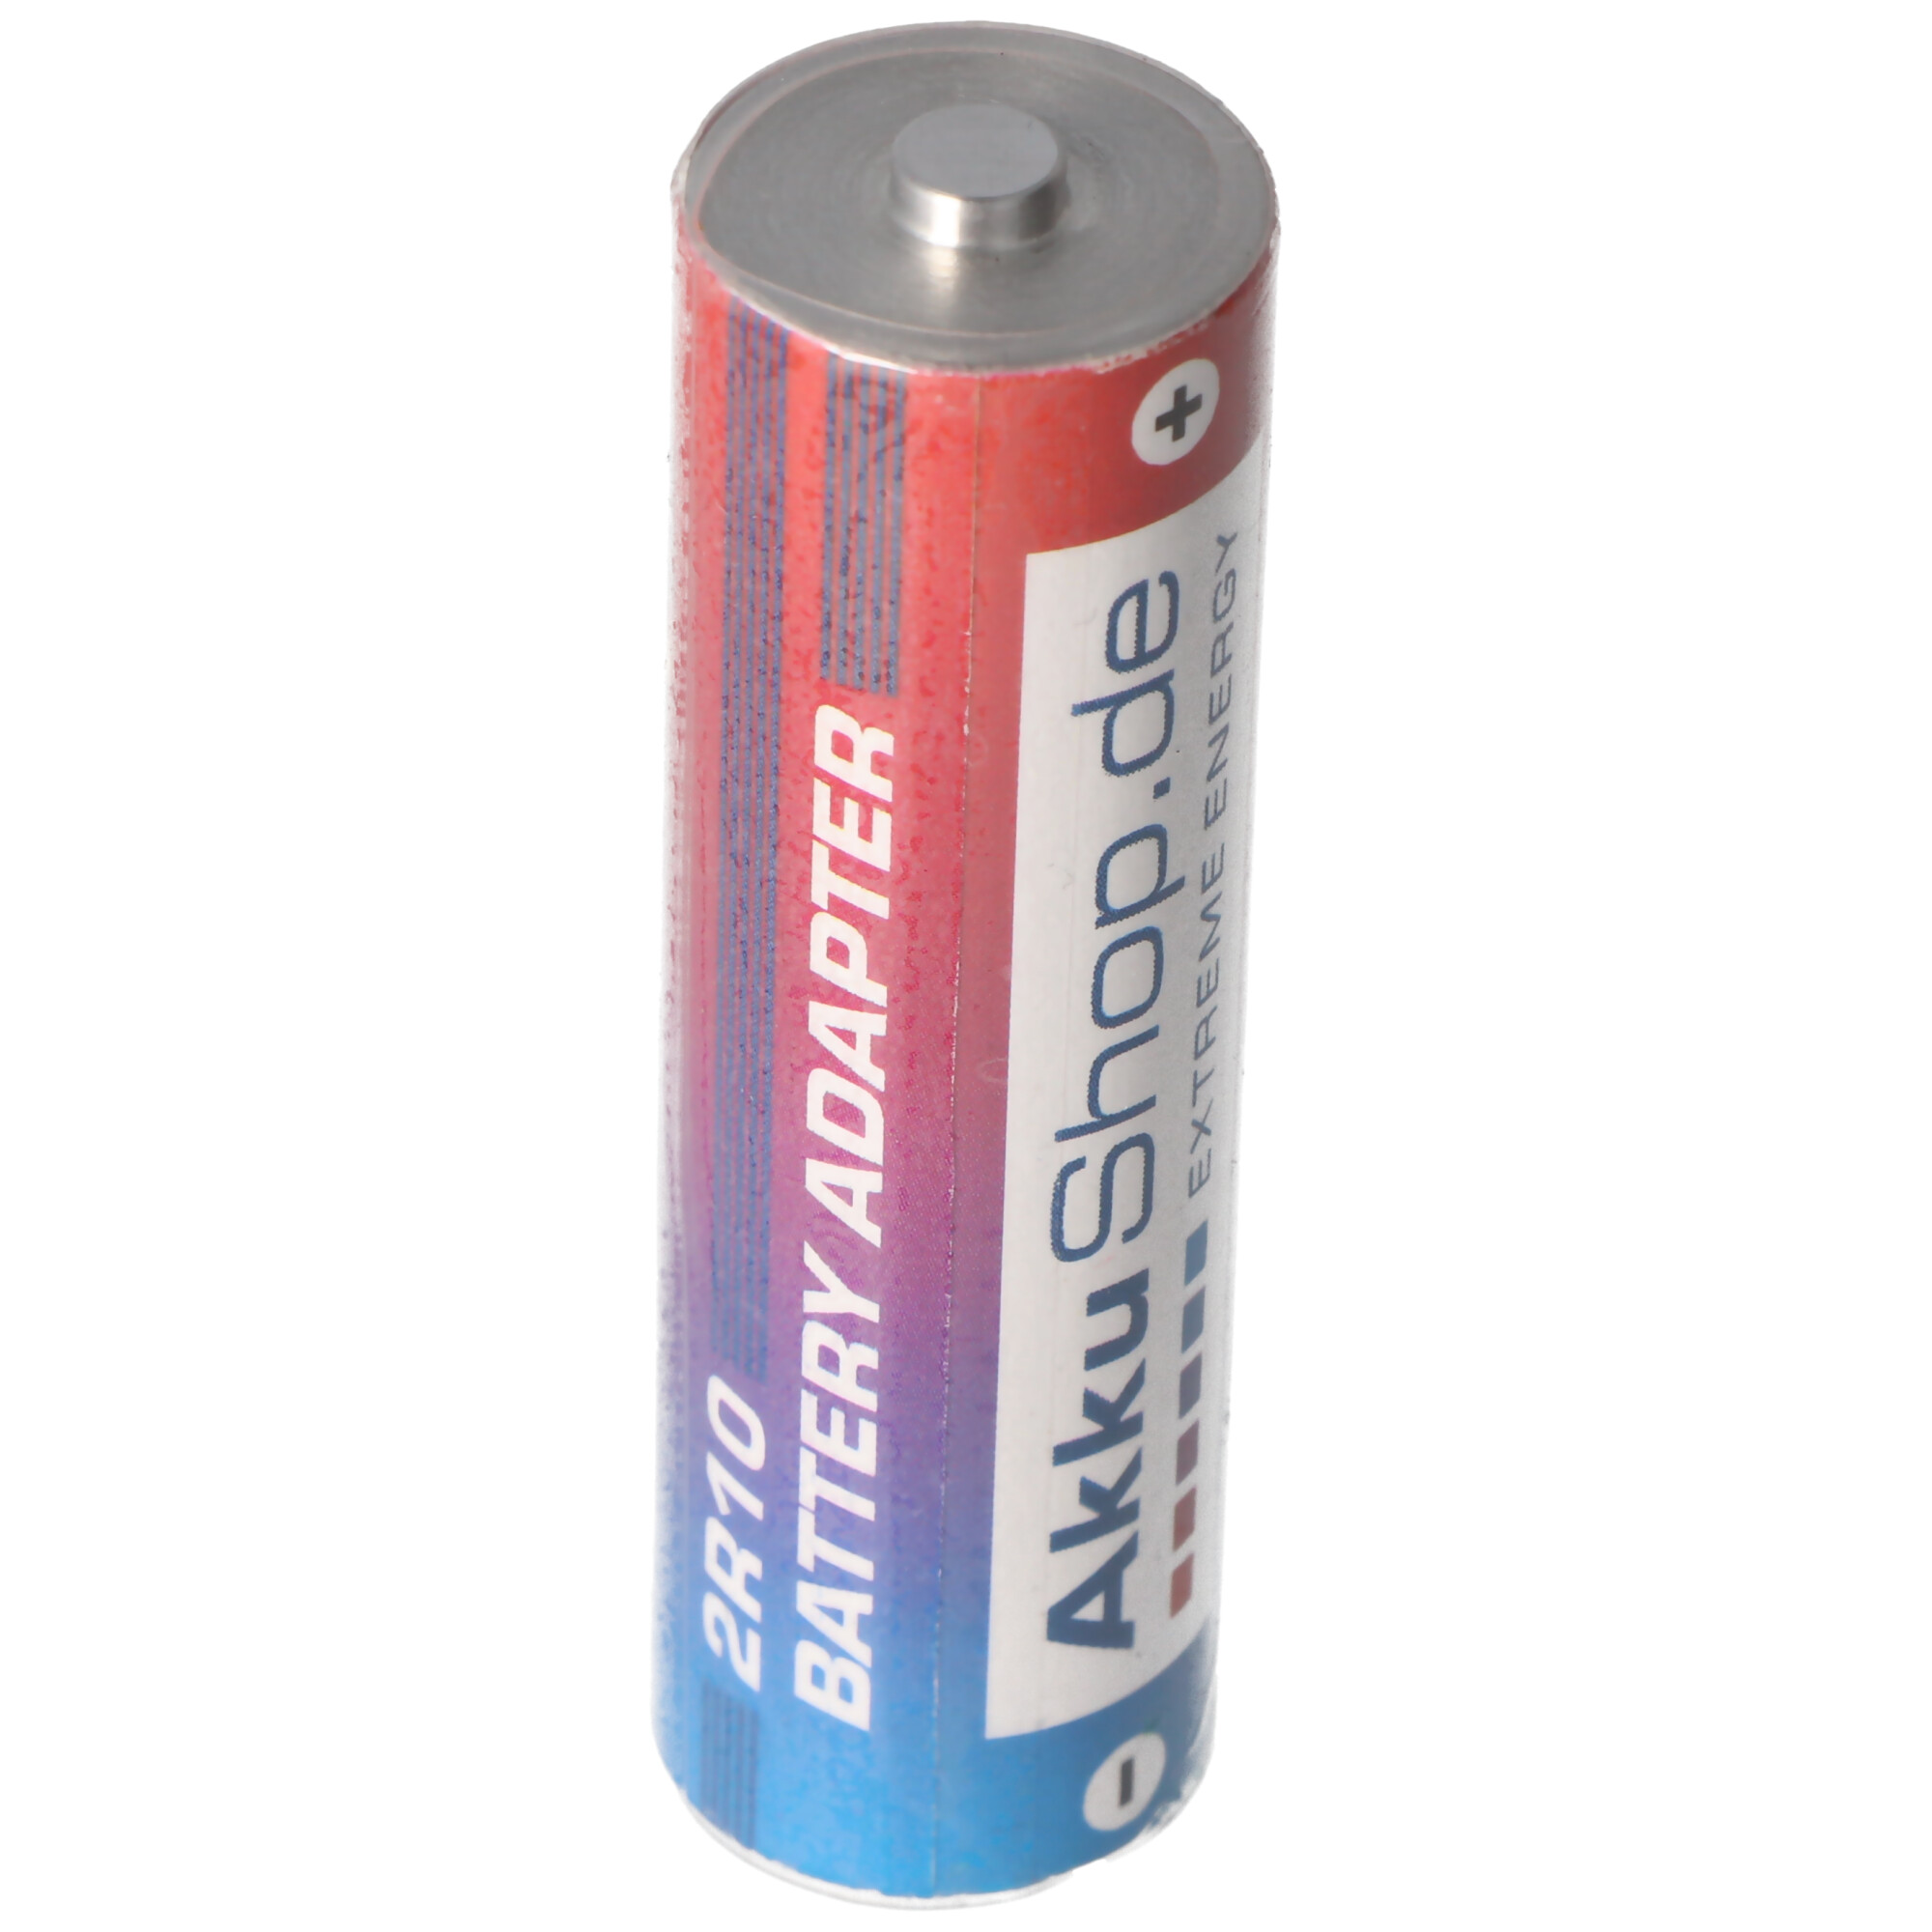 Adapter Batterie 2R10 Duplex Stab-Batterie, 2R10R, 3010, 2010, 3,0 Volt 73x21mm max. 1600mAh